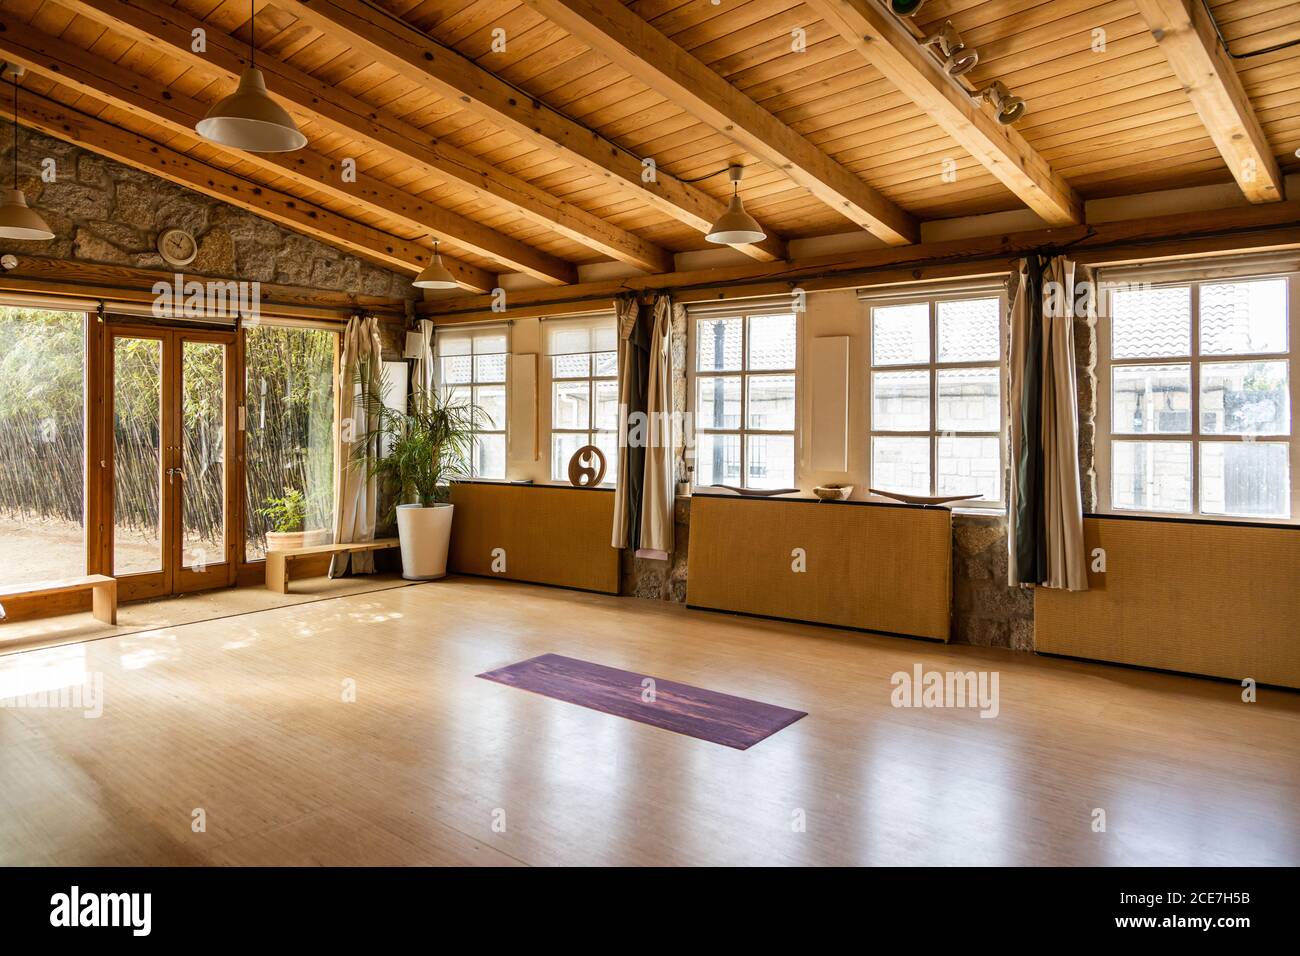 Colchoneta de yoga colocada en el suelo de madera dentro de un espacioso pabellón decorado en estilo oriental situado en el país tropical Foto de stock